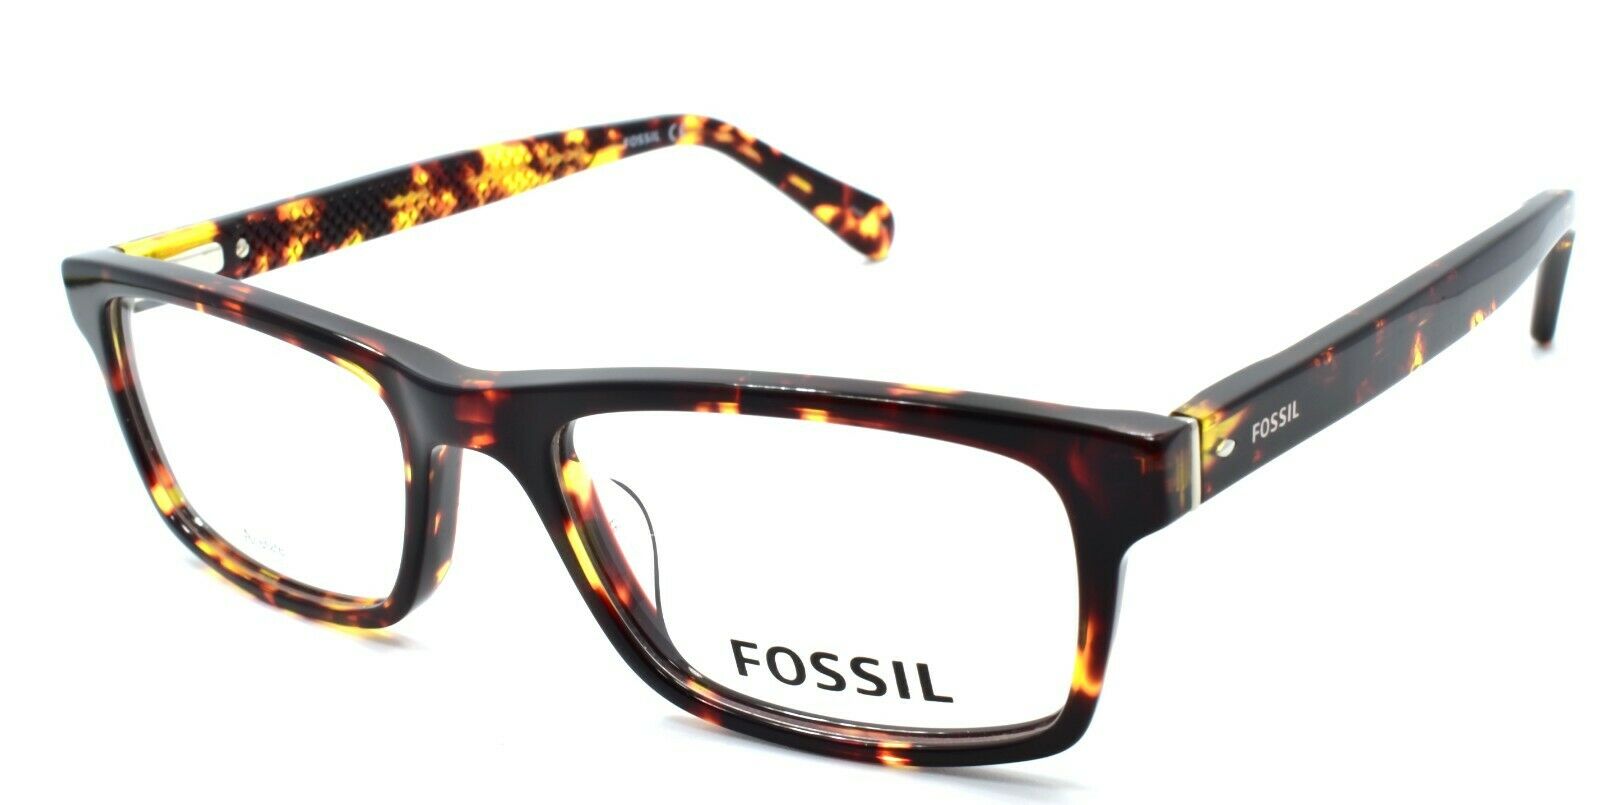 1-Fossil FOS 7061 086 Men's Eyeglasses Frames 51-18-145 Dark Havana-716736181158-IKSpecs